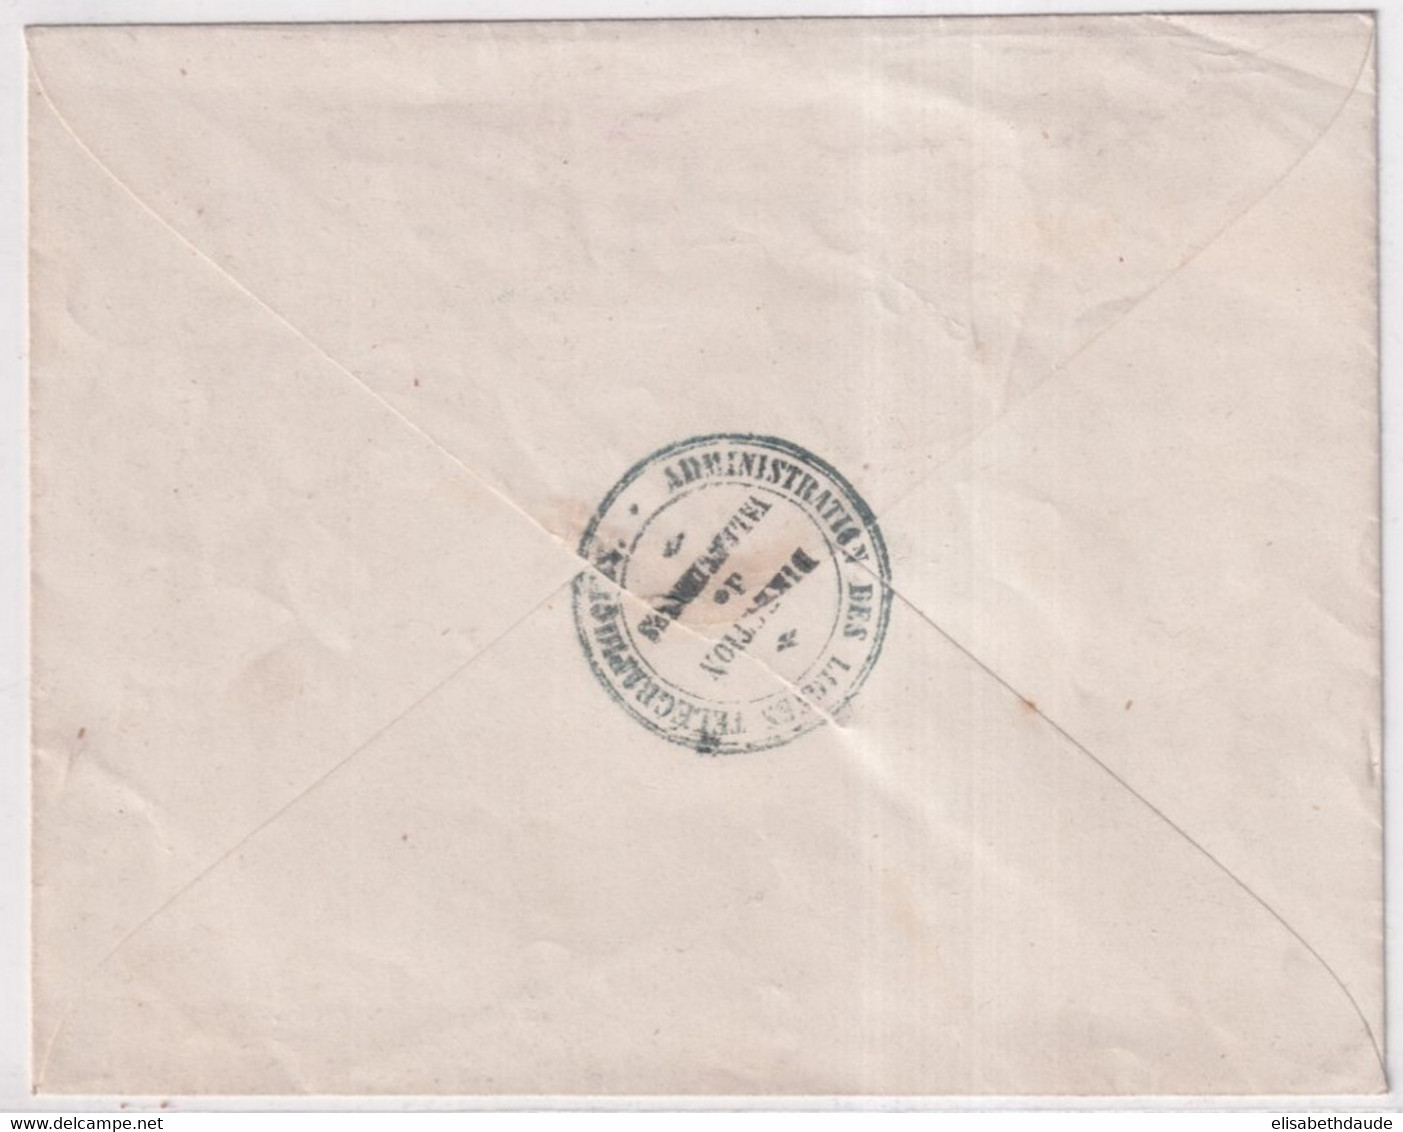 AVANT 1900 - ENVELOPPE TELEGRAPHIE PRIVEE DIRECTION De VALENCIENNES (NORD) - Télégraphes Et Téléphones